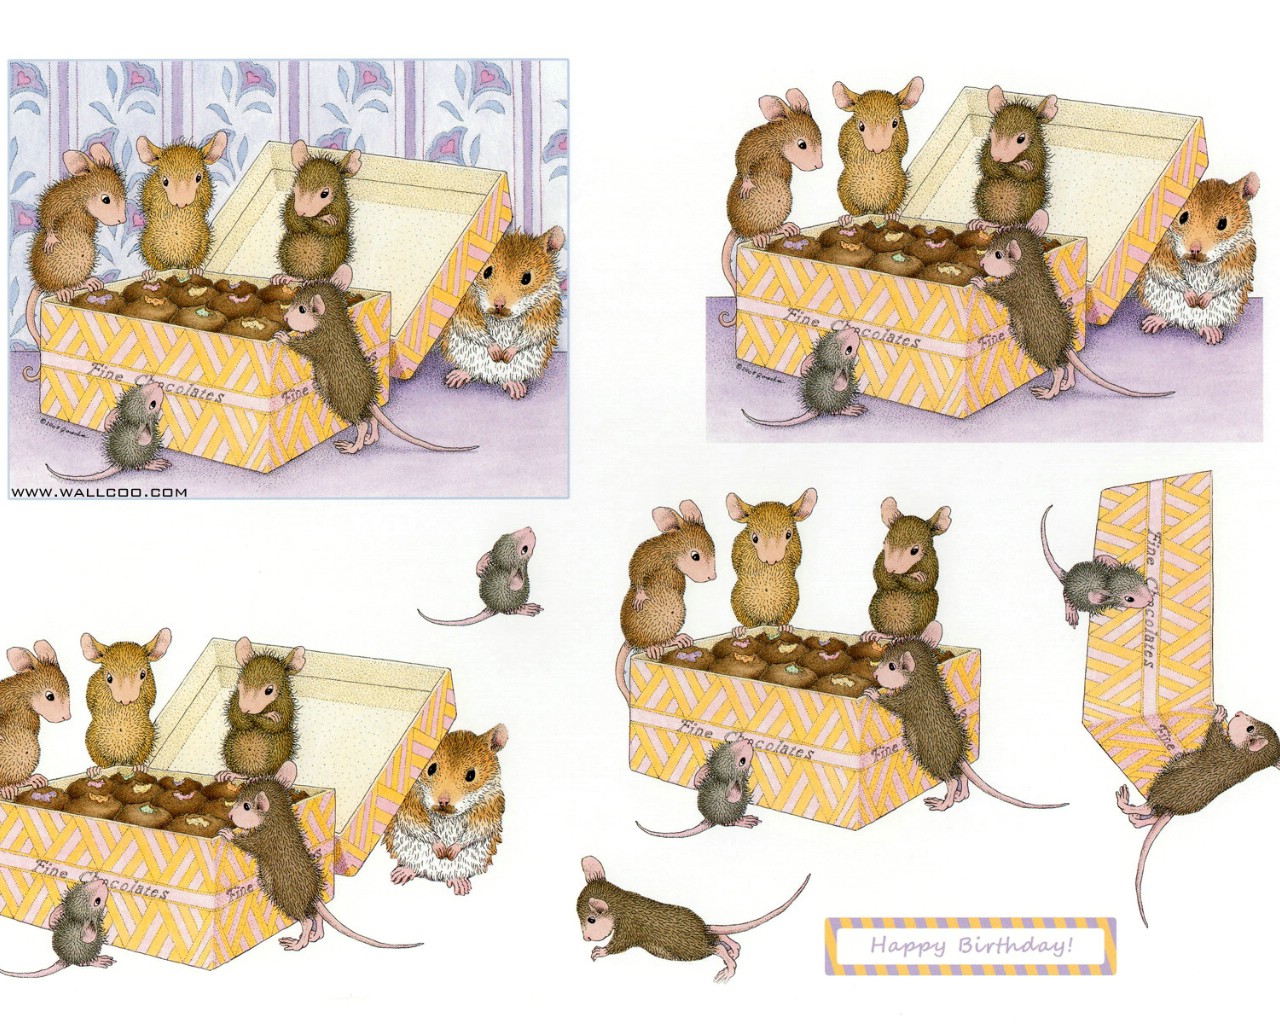 壁纸1280x1024 巧克力 可爱小老鼠插画原画壁纸 鼠鼠一家-温馨小老鼠插画壁纸壁纸 鼠鼠一家-温馨小老鼠插画壁纸图片 鼠鼠一家-温馨小老鼠插画壁纸素材 绘画壁纸 绘画图库 绘画图片素材桌面壁纸